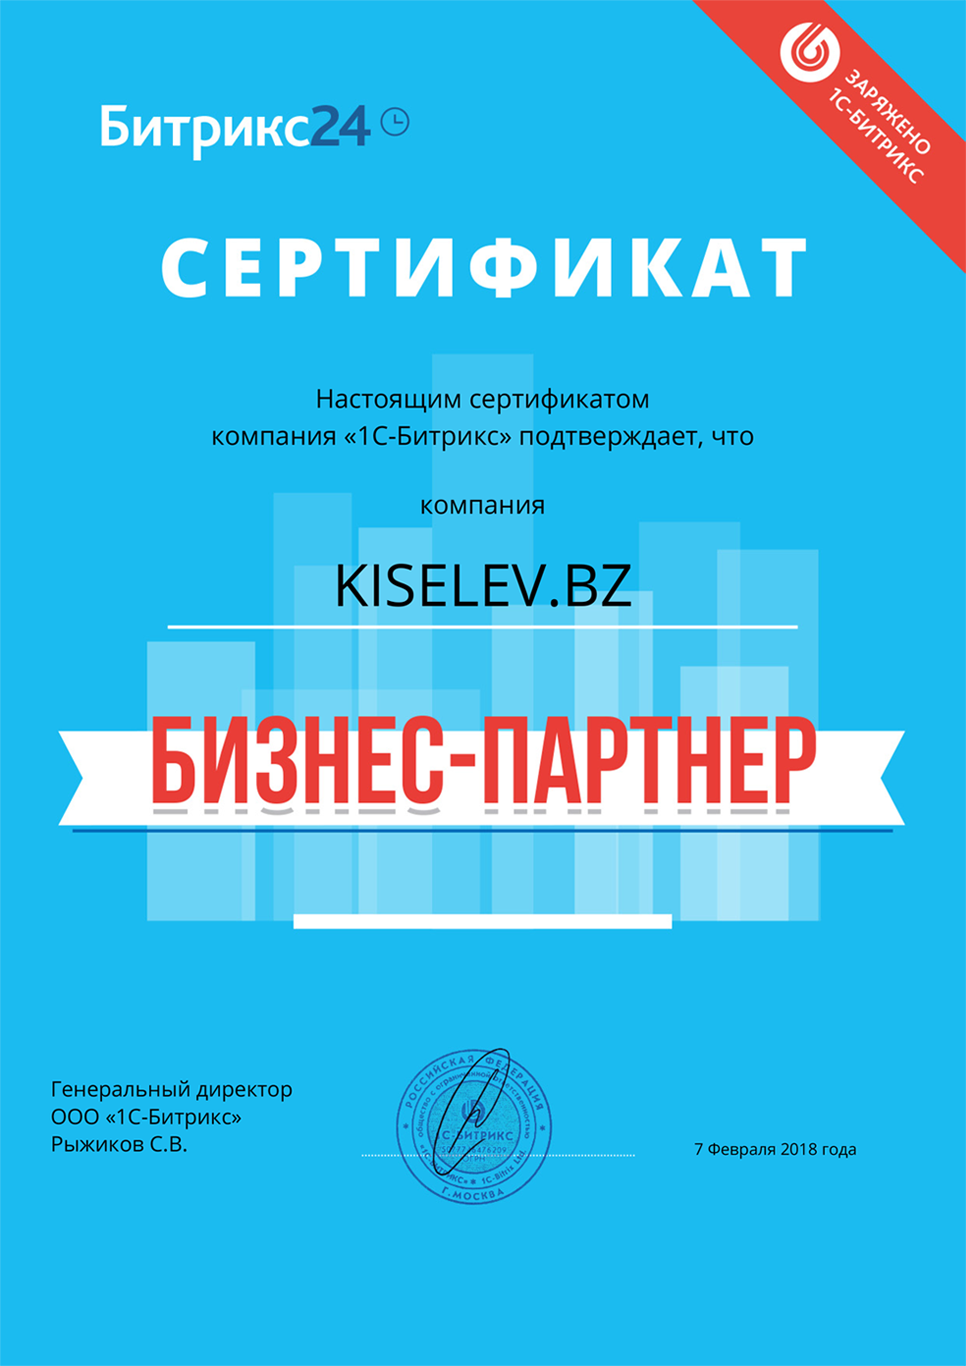 Сертификат партнёра по АМОСРМ в Мурманске